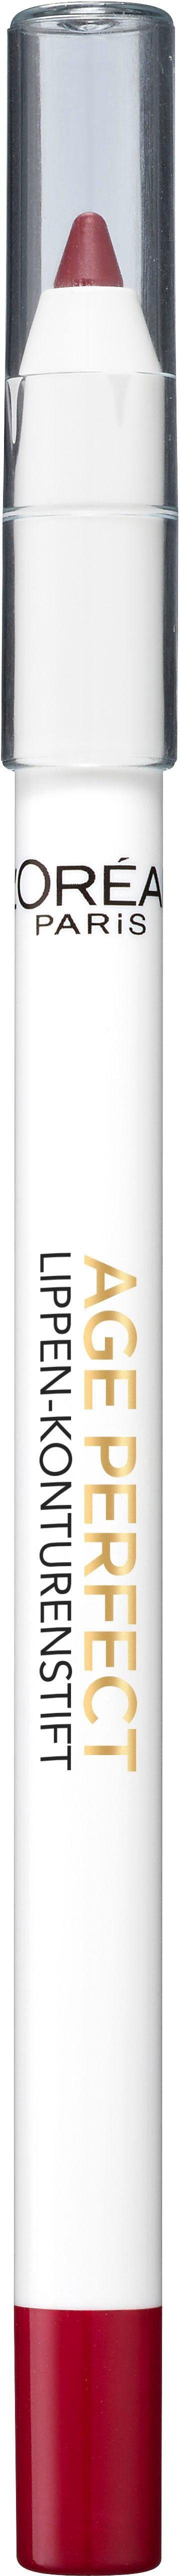 Plum 705 L'ORÉAL Lippen-Konturenstift PARIS PROFESSIONNEL Perfect Age Lipliner PARIS L'ORÉAL Splendid